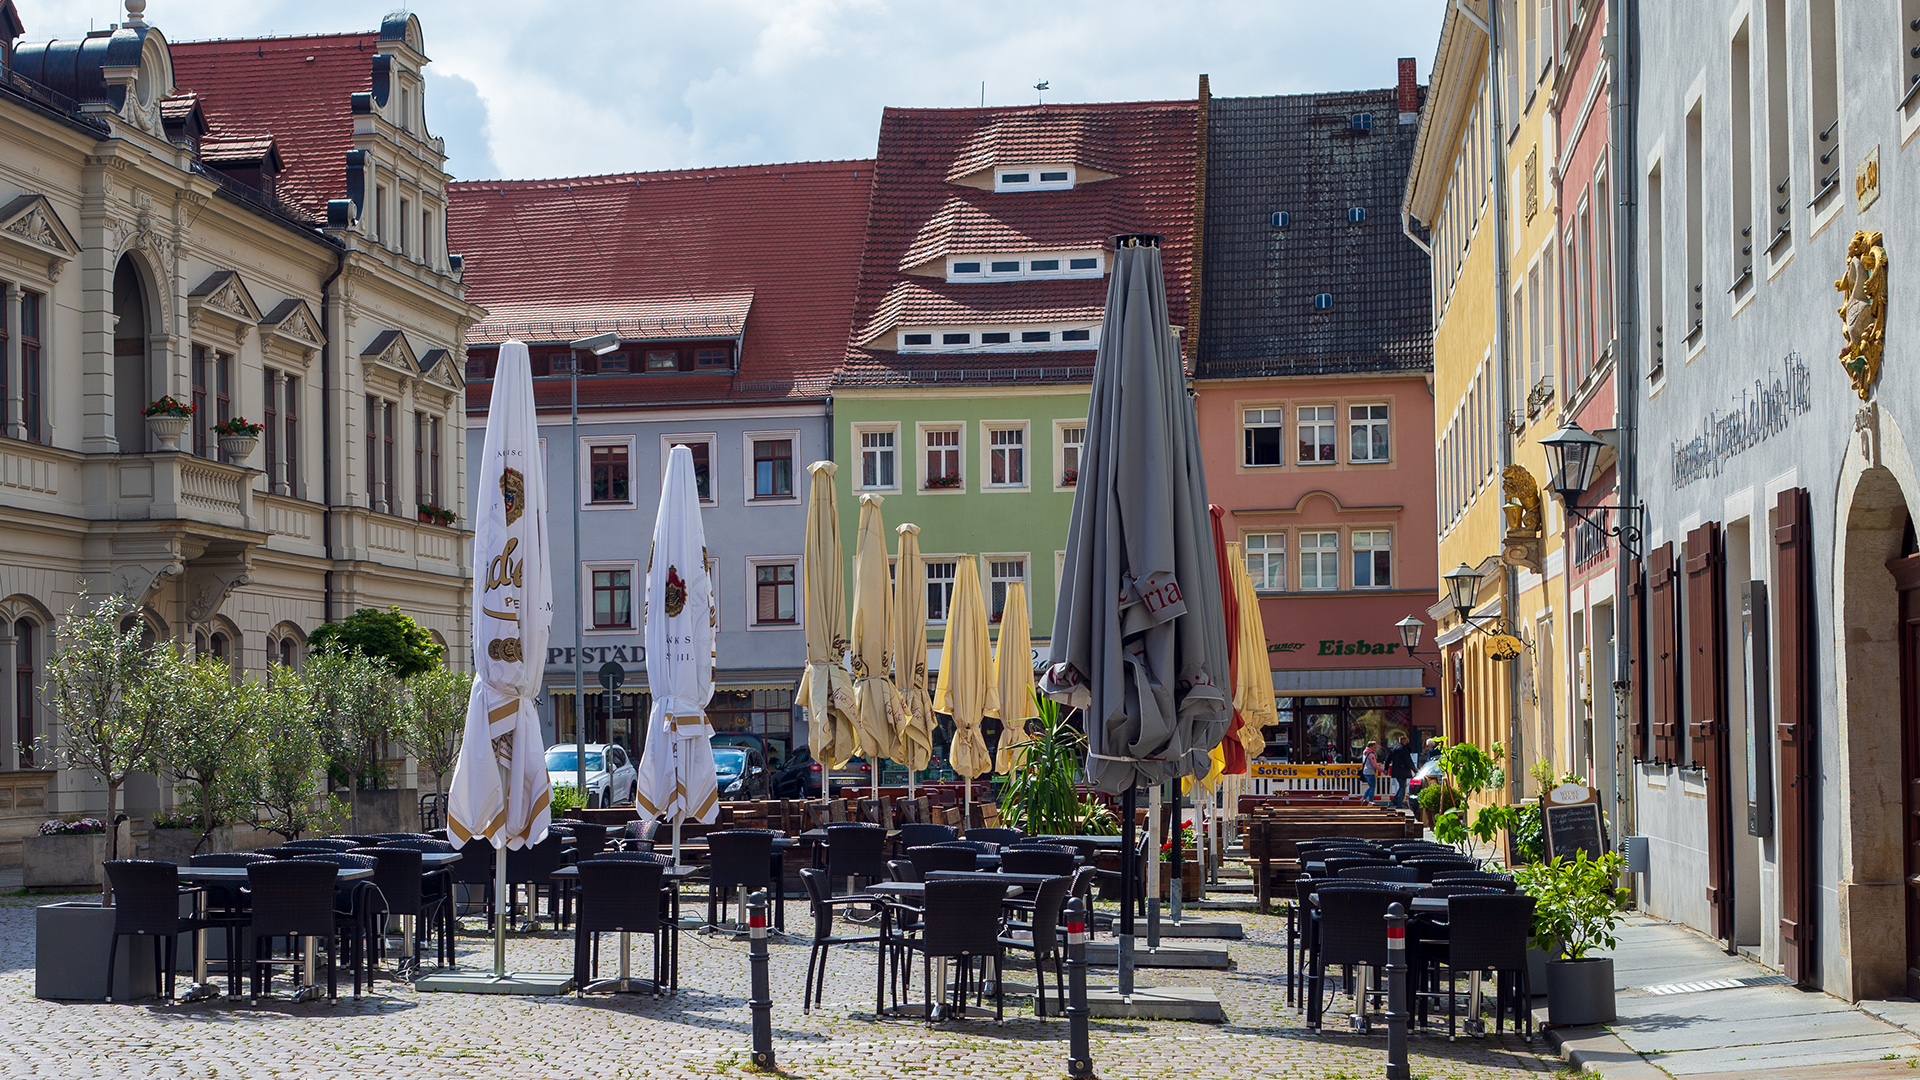 Cafés in der Innenstadt von Pirna | picture alliance/dpa